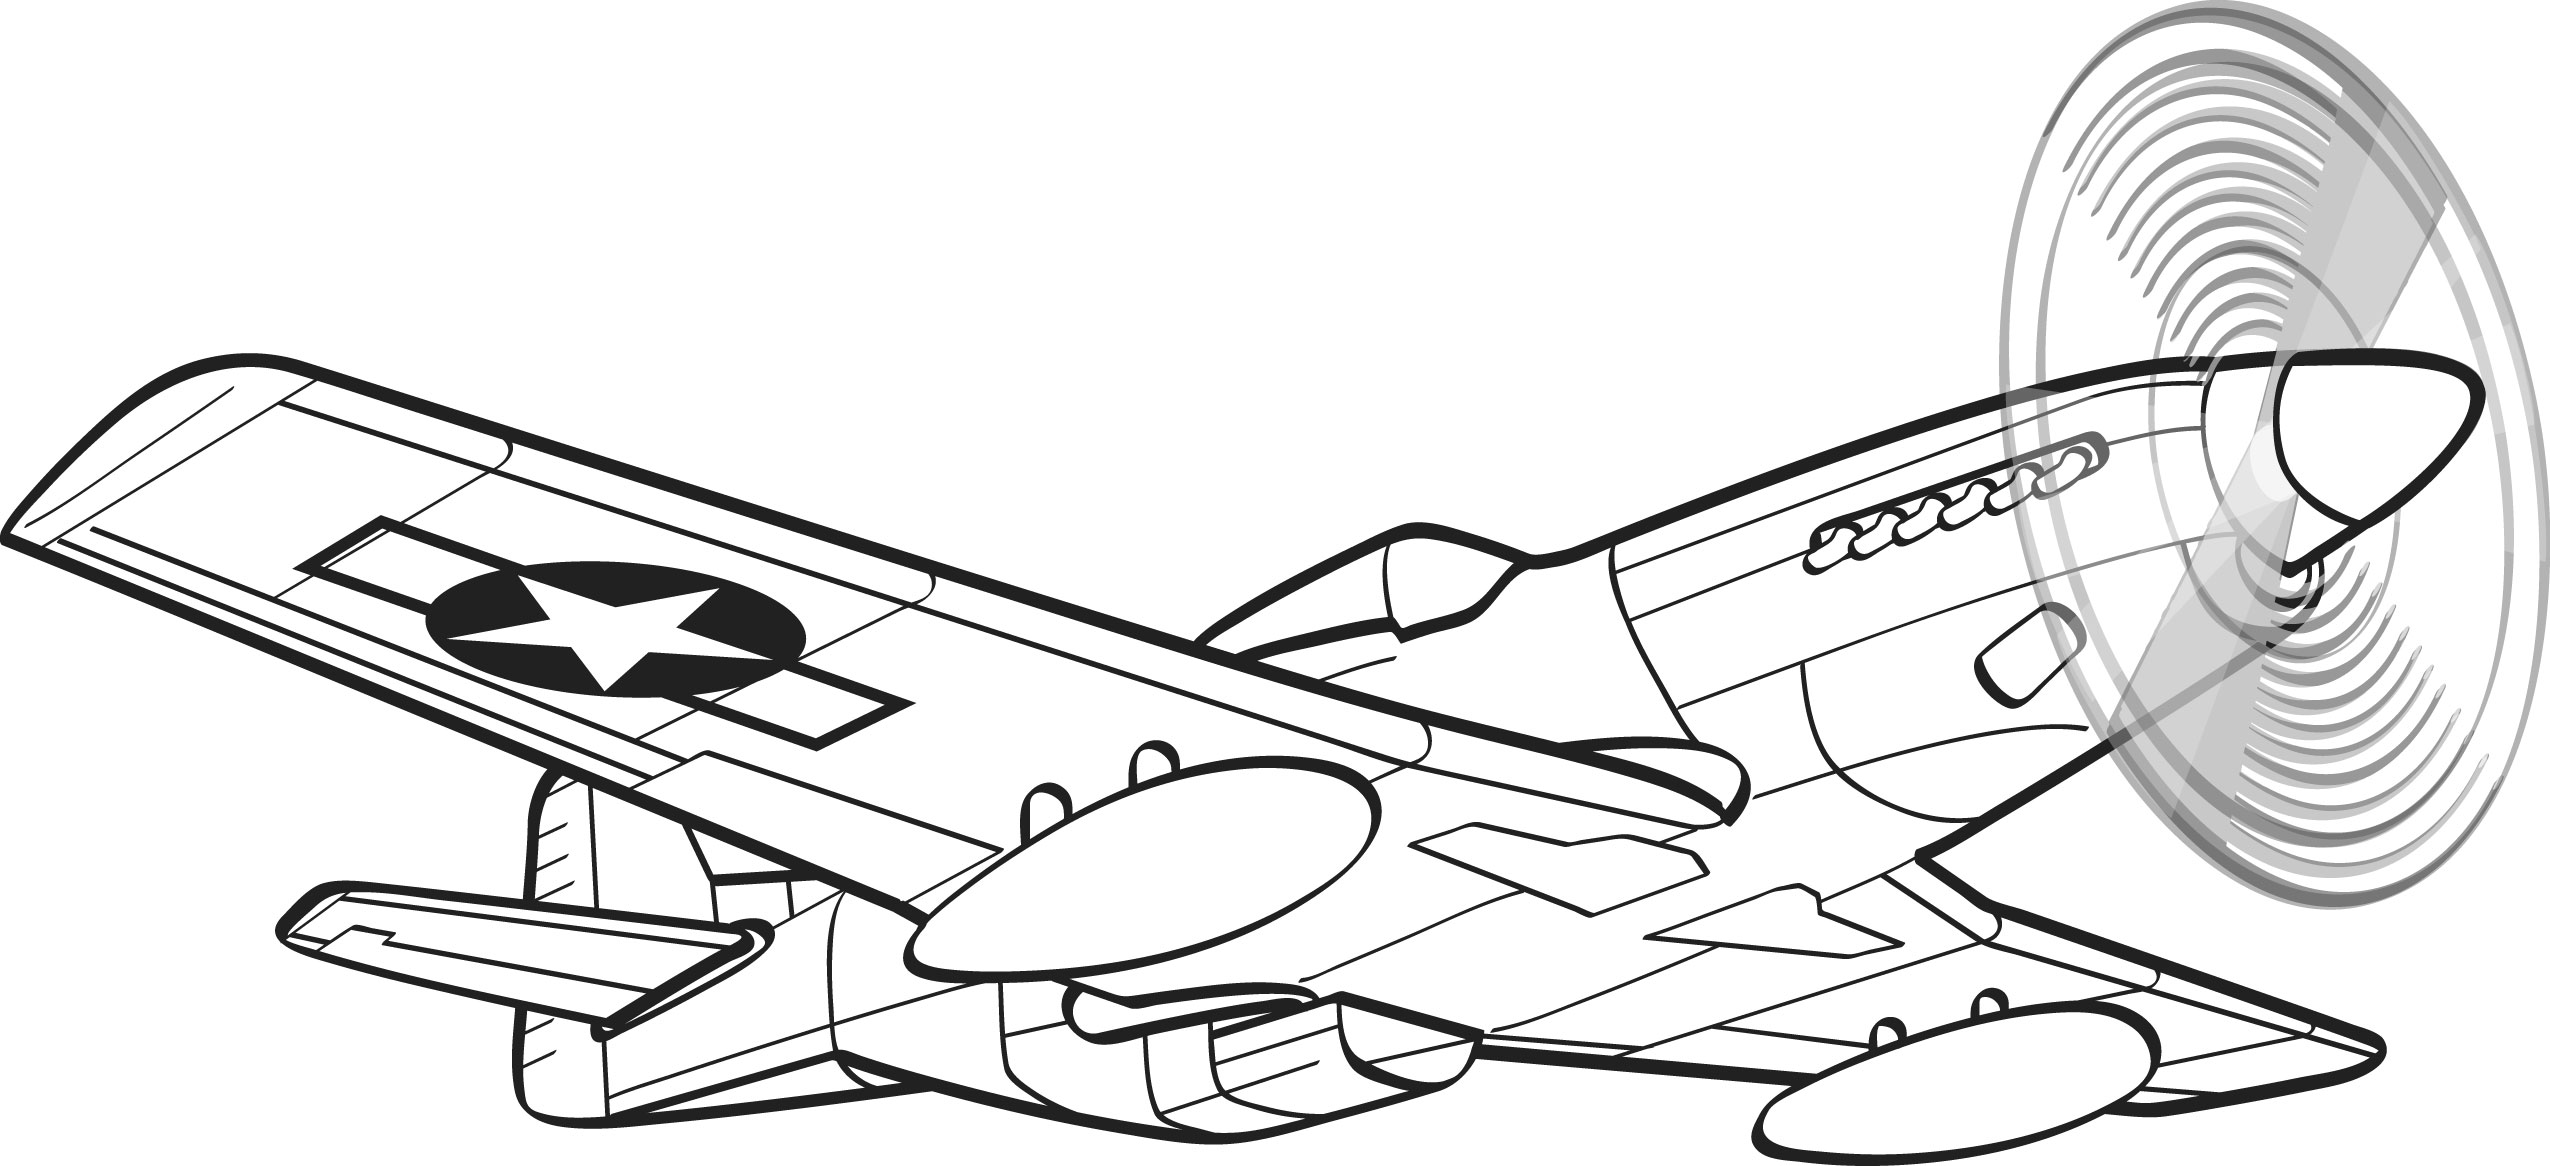 simple airplane line drawings